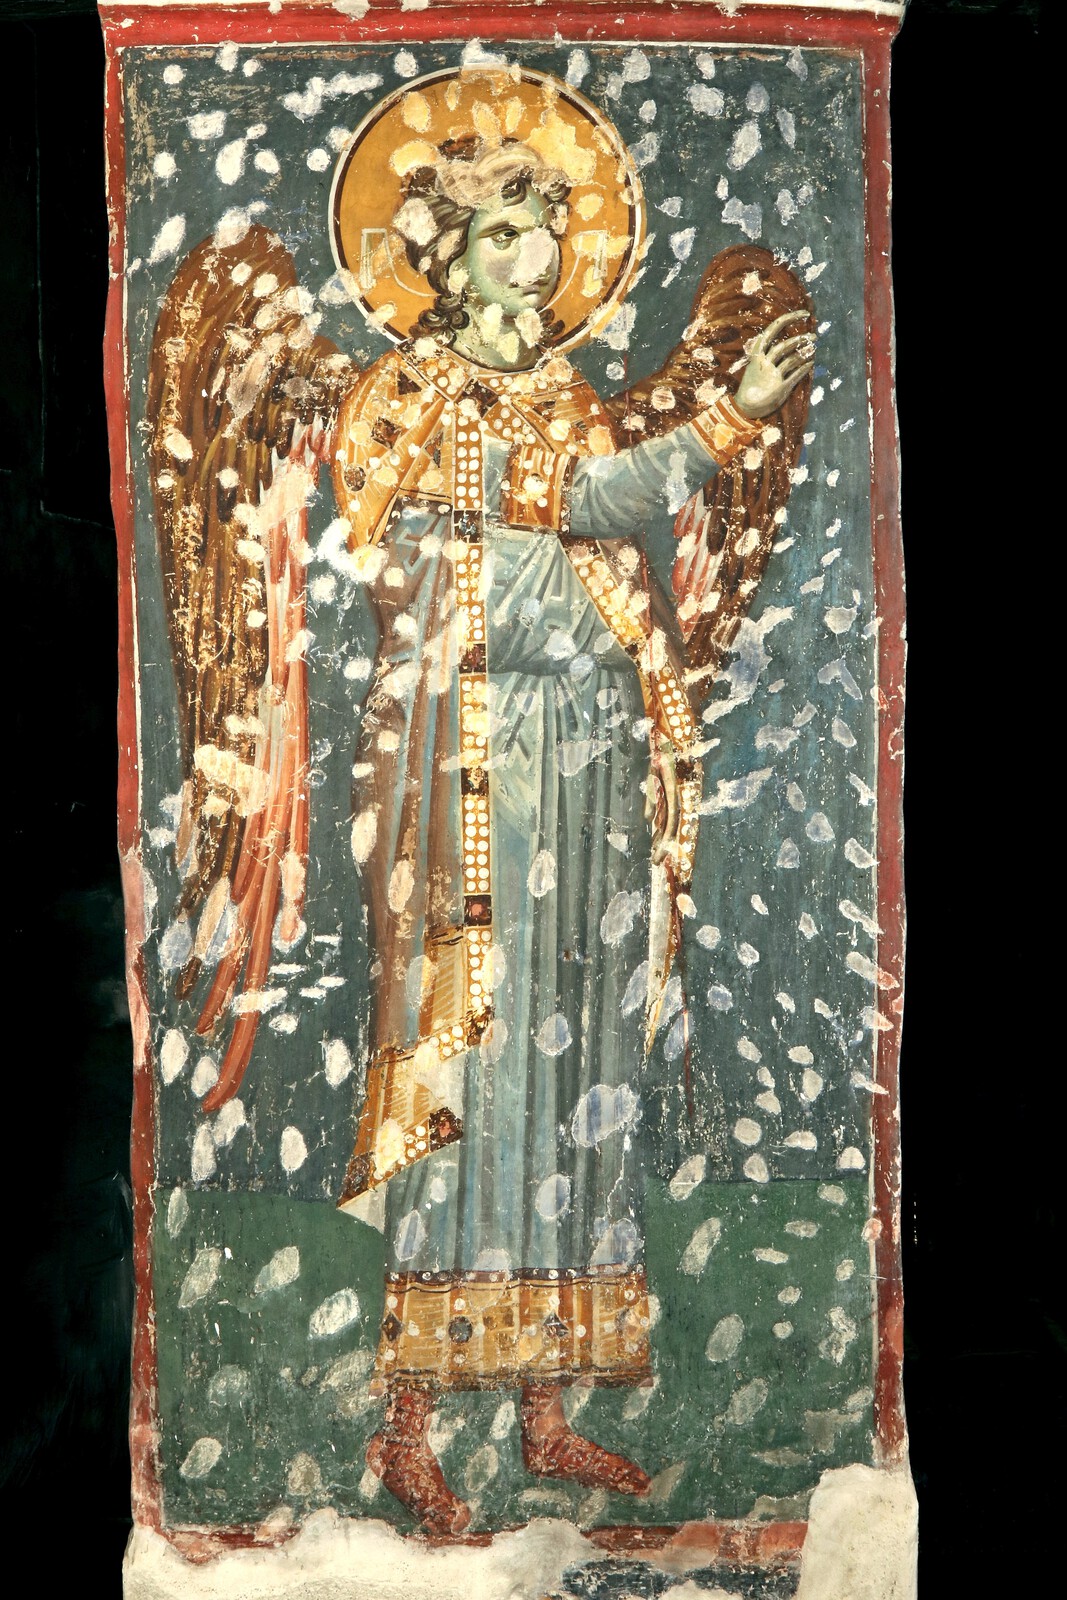 The Annunciation, archangel Gabriel